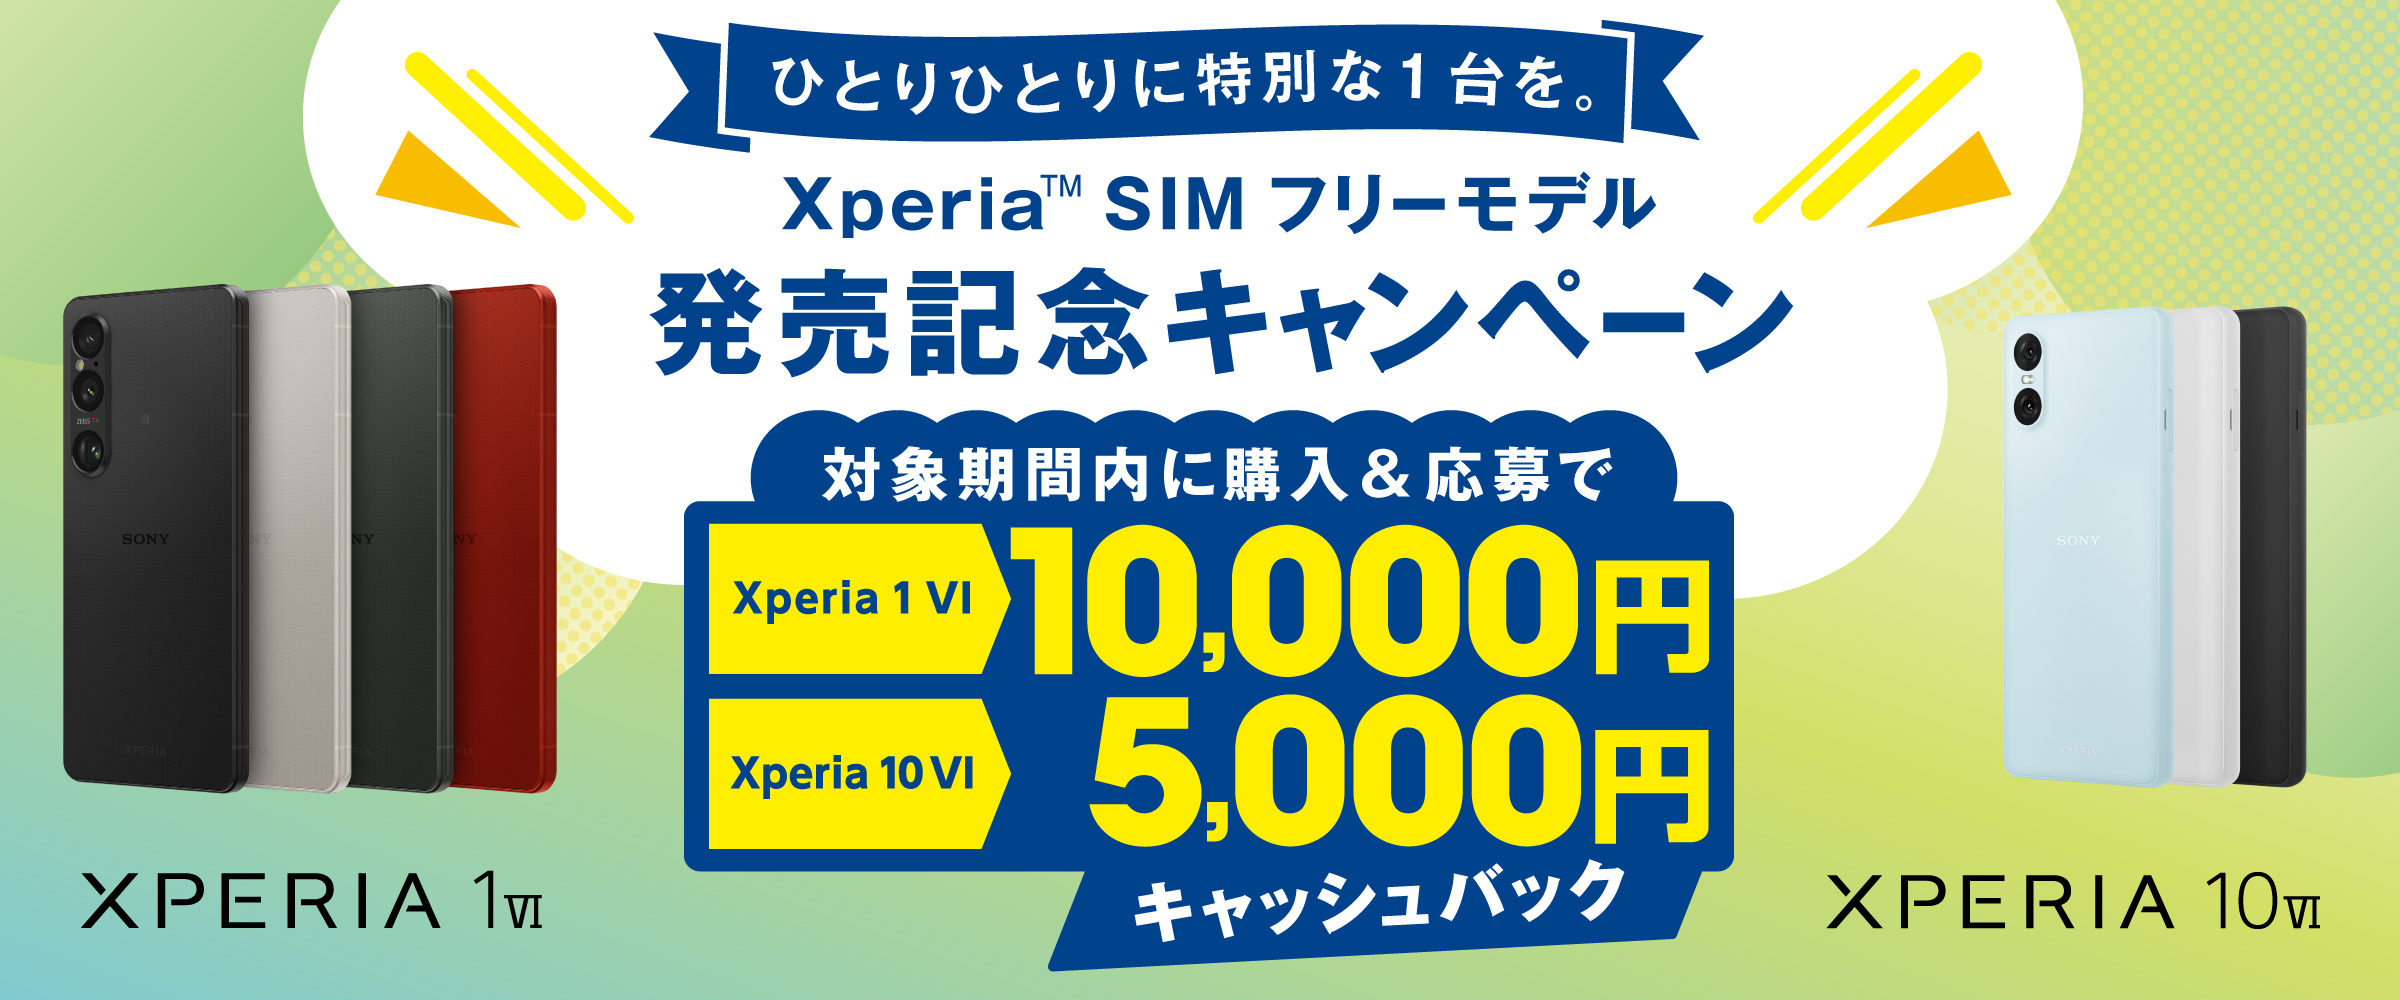 ひとりひとりに特別な1台を Xperia SIM フリーモデル 発売記念キャンペーン 購入期間中に購入＆応募で Xperia 1 VI 10,000円 Xperia 10 VI 5,000円 キャッシュバック